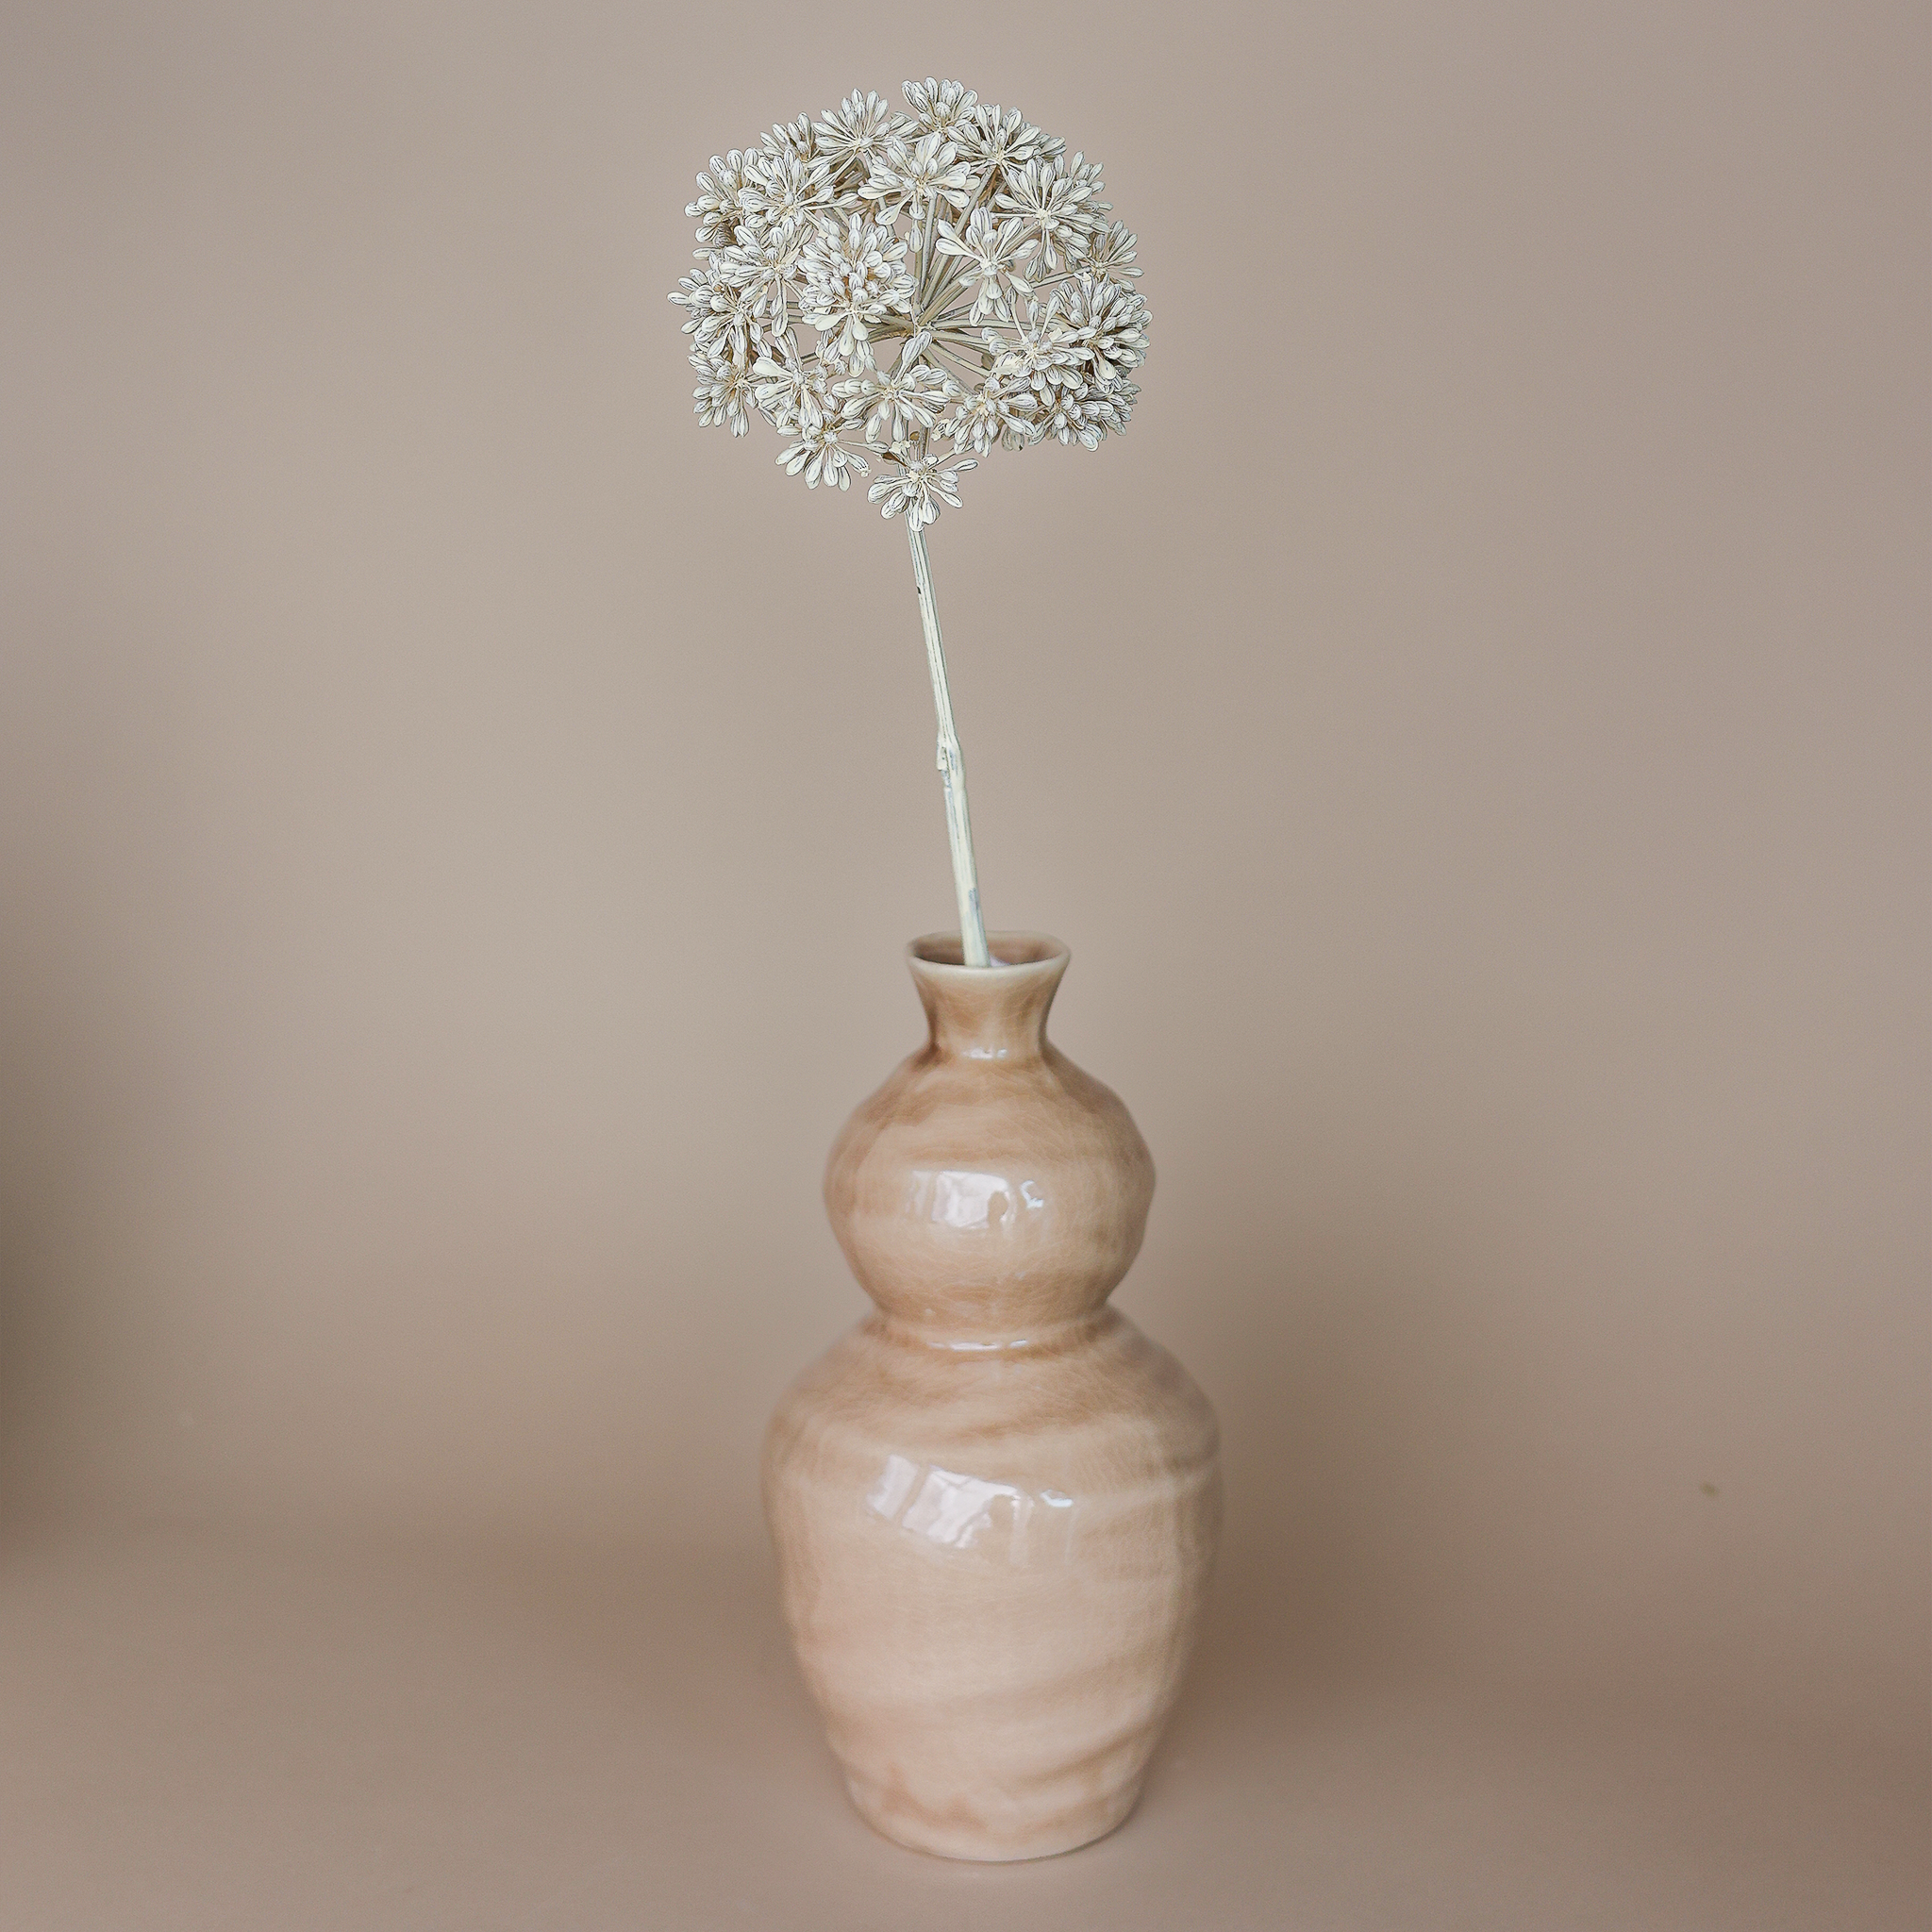 Fritz Set Eukalyptus Blüte & Vase Keramik hellbraun 14x28cm